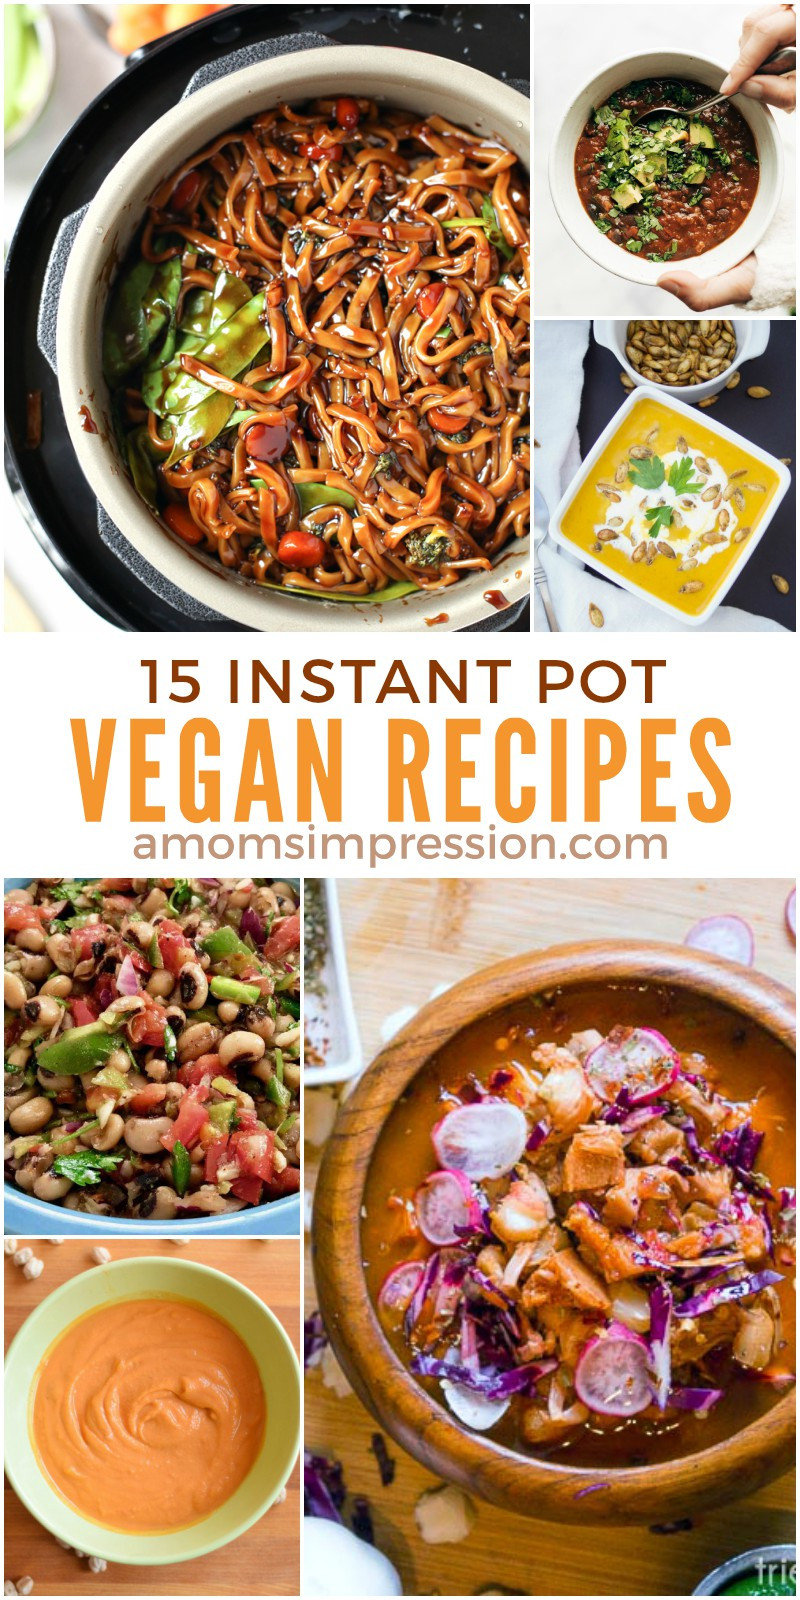 Instant Pot Recipes Healthy
 15 Healthy and Delicious Vegan Instant Pot Recipes